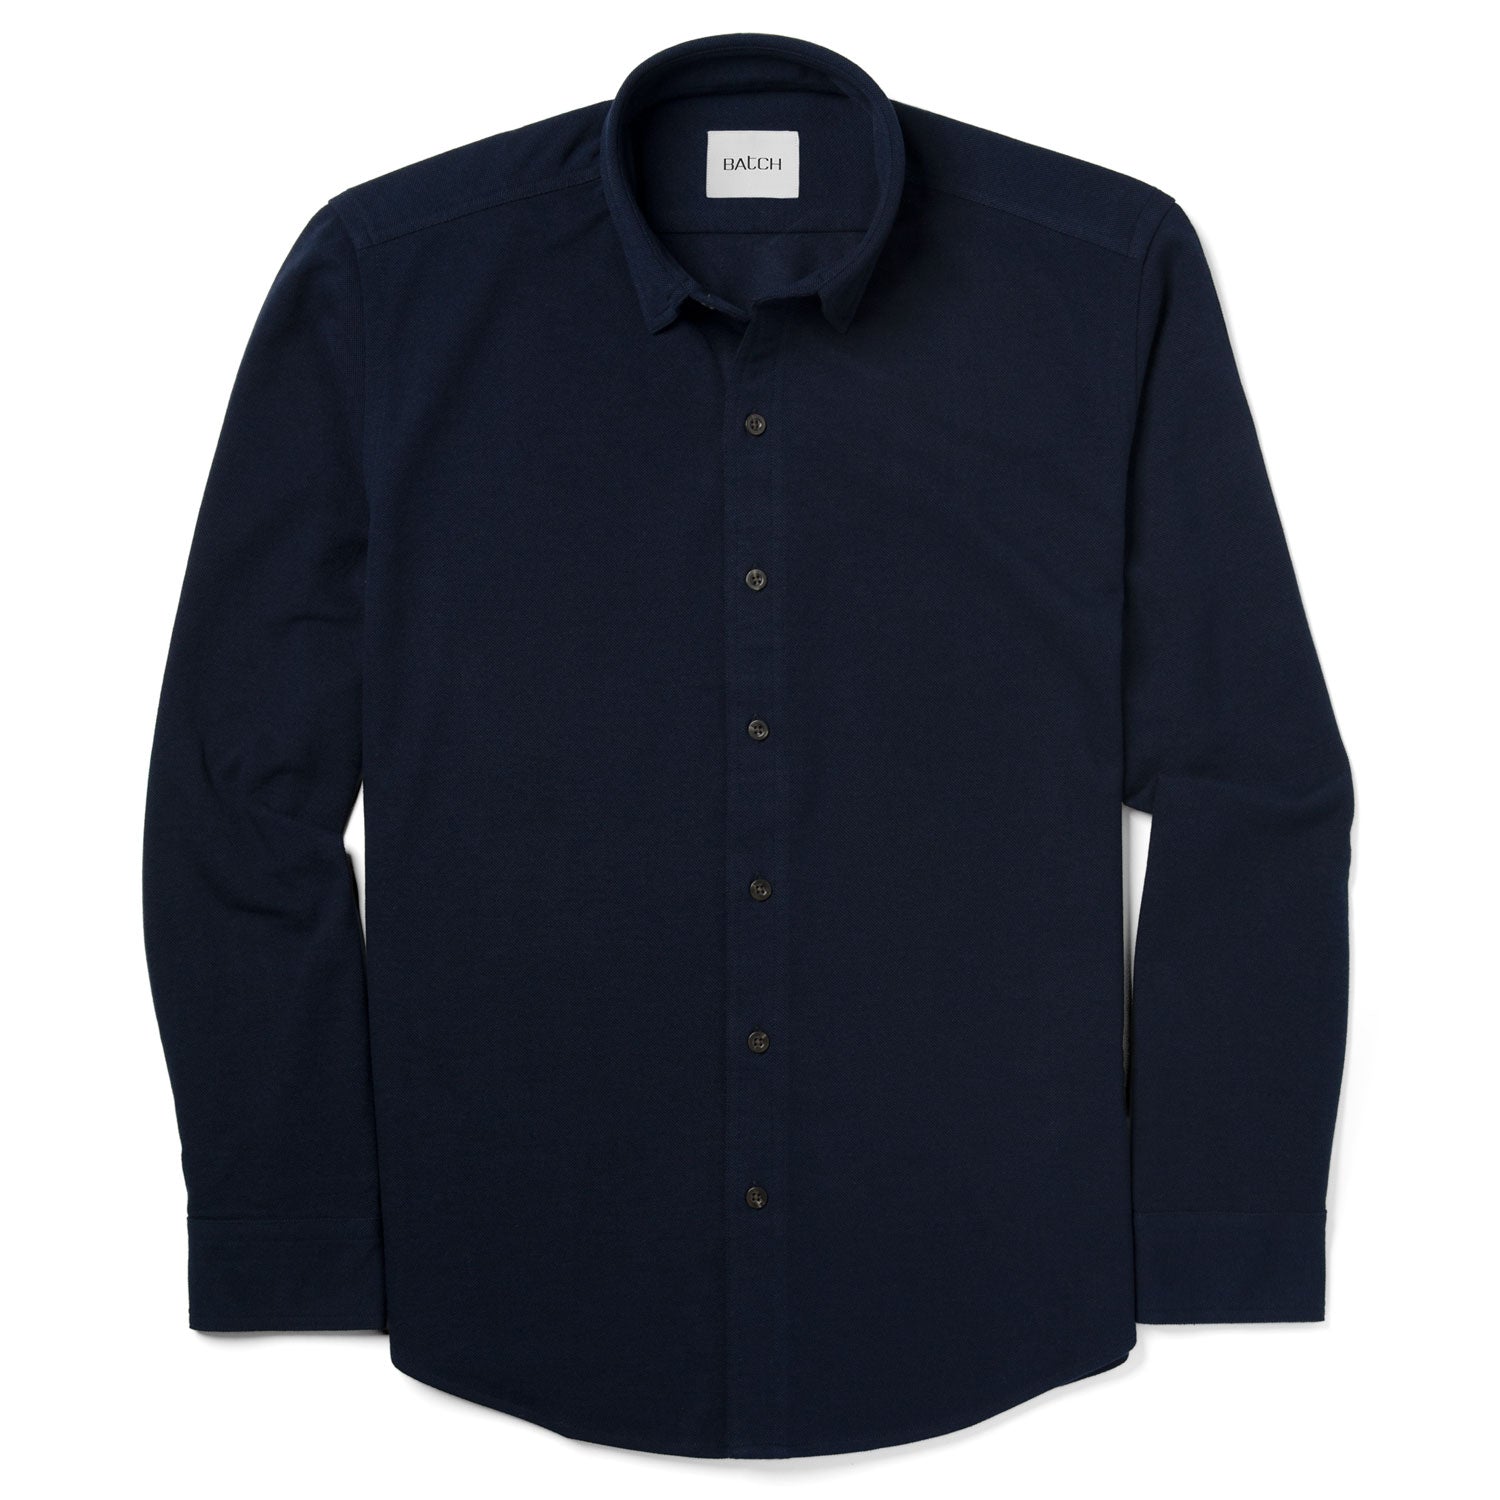 Essential Knit Shirt – Dark Navy Cotton Poly Pique